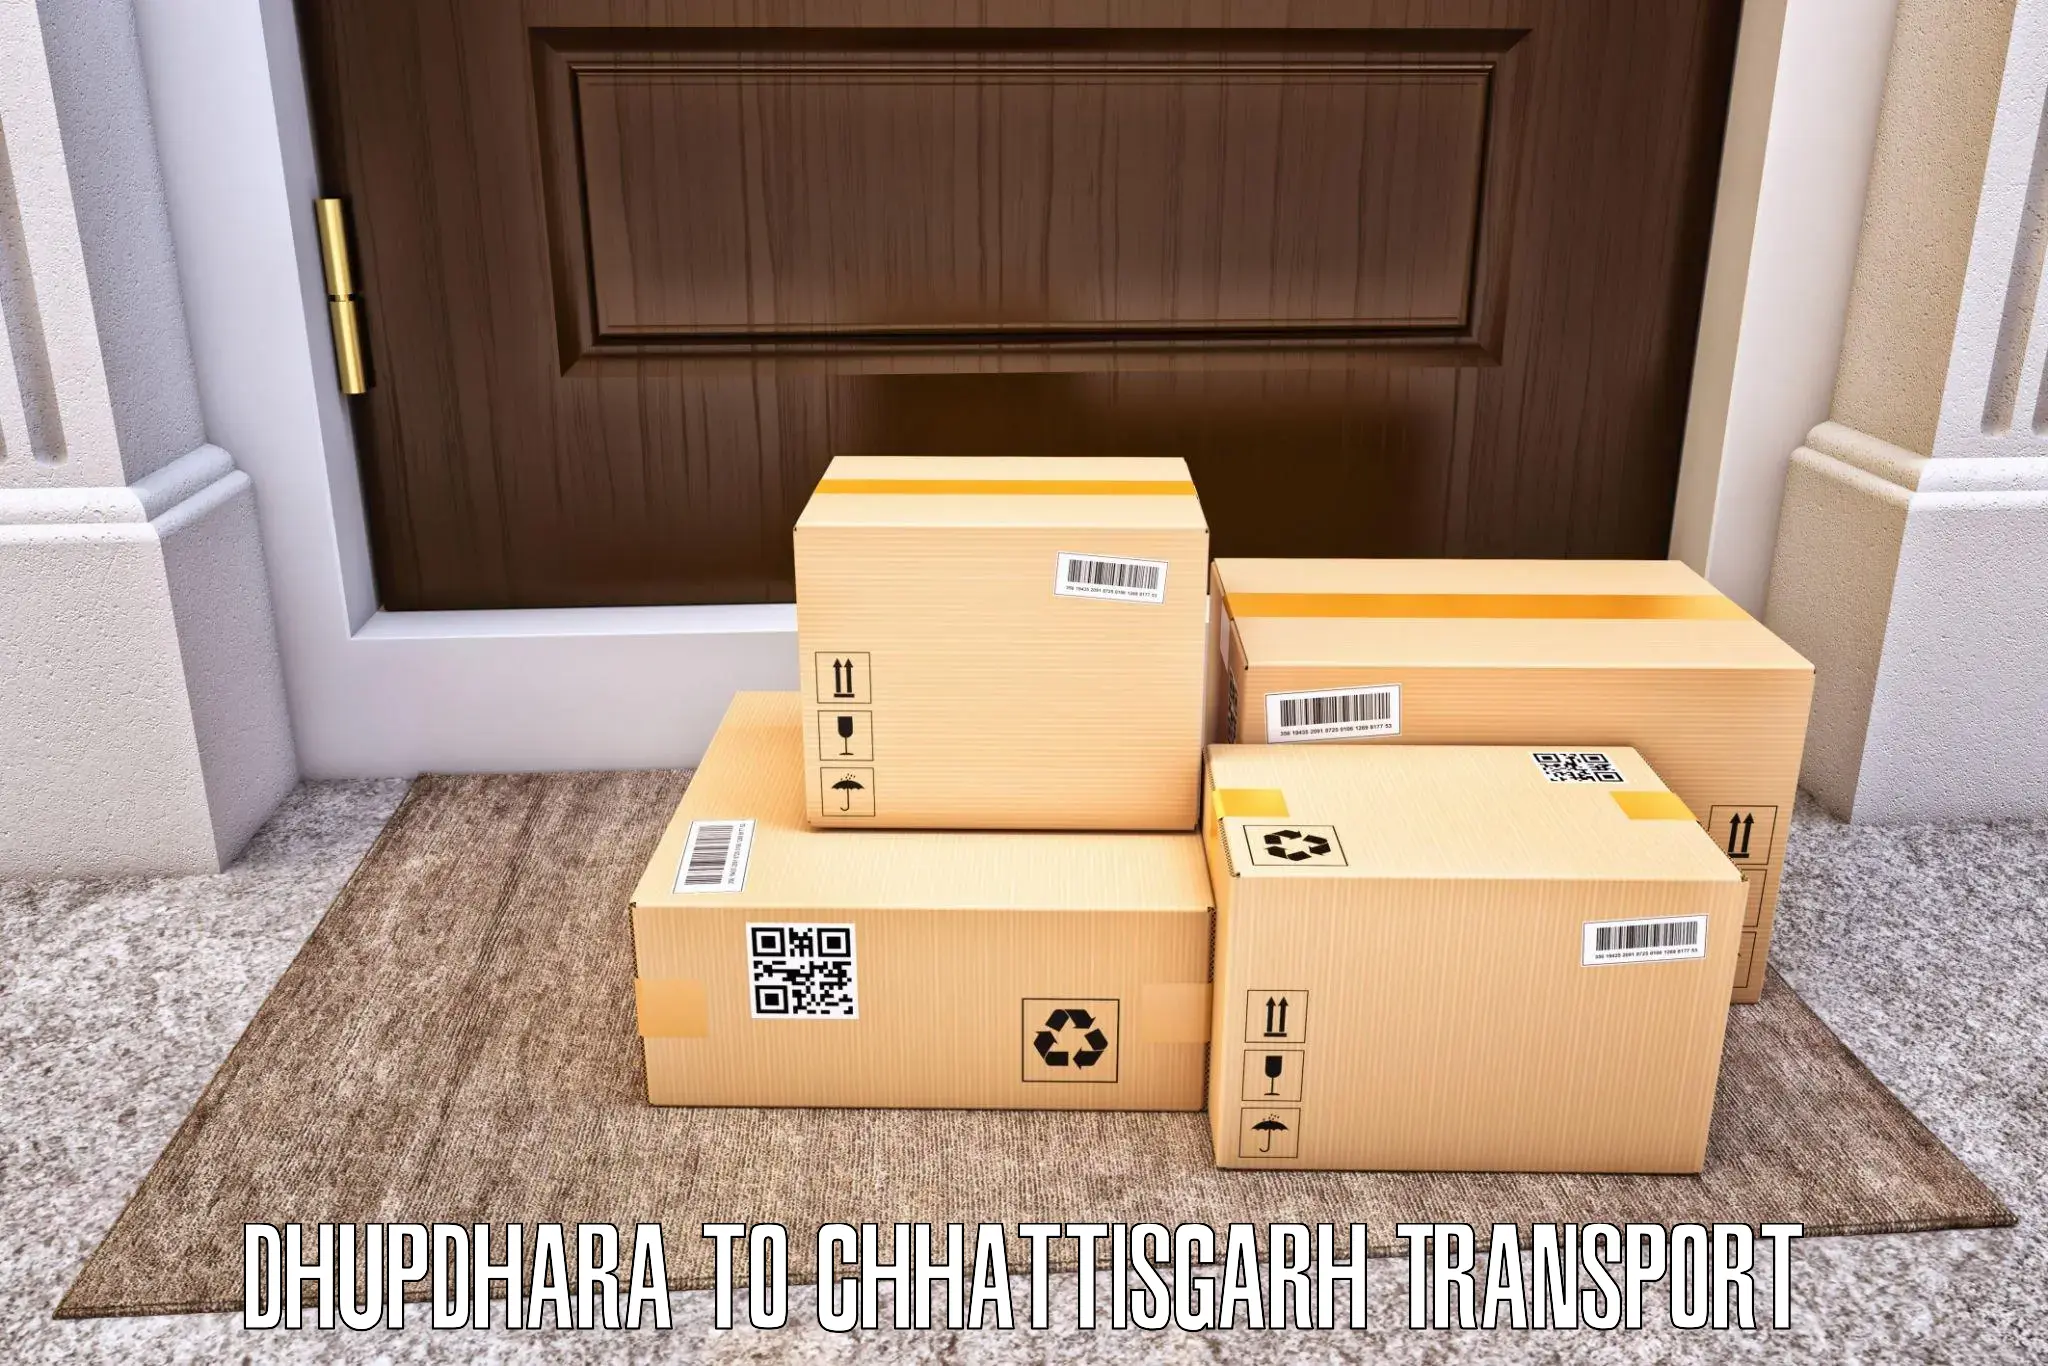 Two wheeler parcel service Dhupdhara to bagbahra